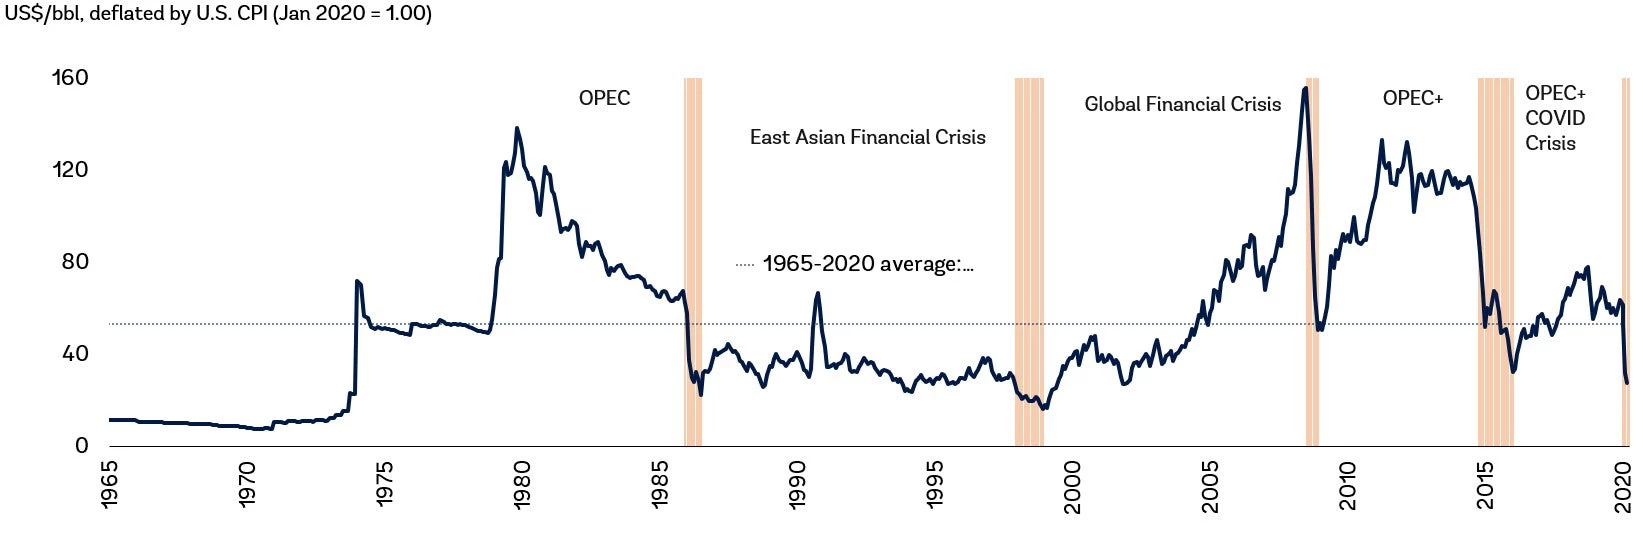 المتوسطات التاريخية لأسعار النفط الخام والأحداث الرئيسية